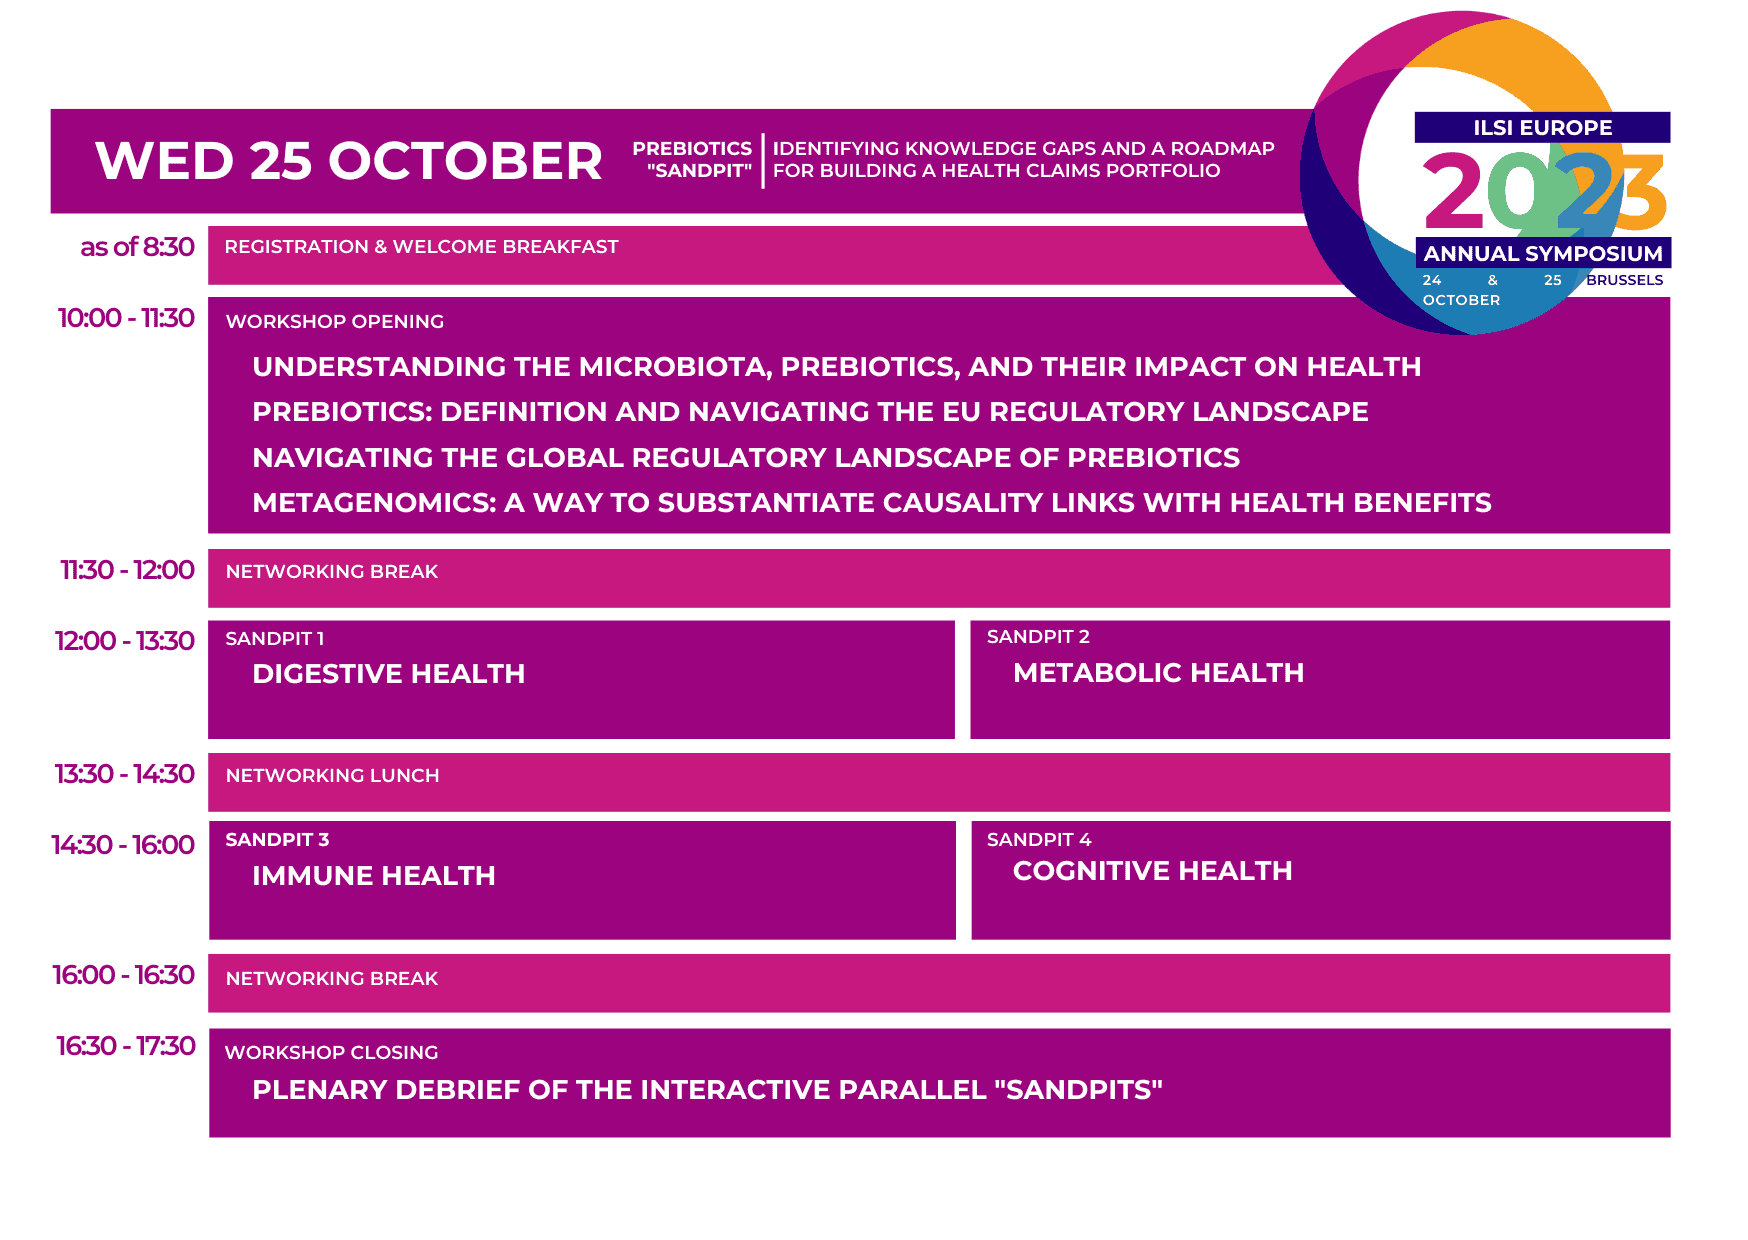 Programme at a glance of the Prebiotics Sandpit workshop of 25 October 2023